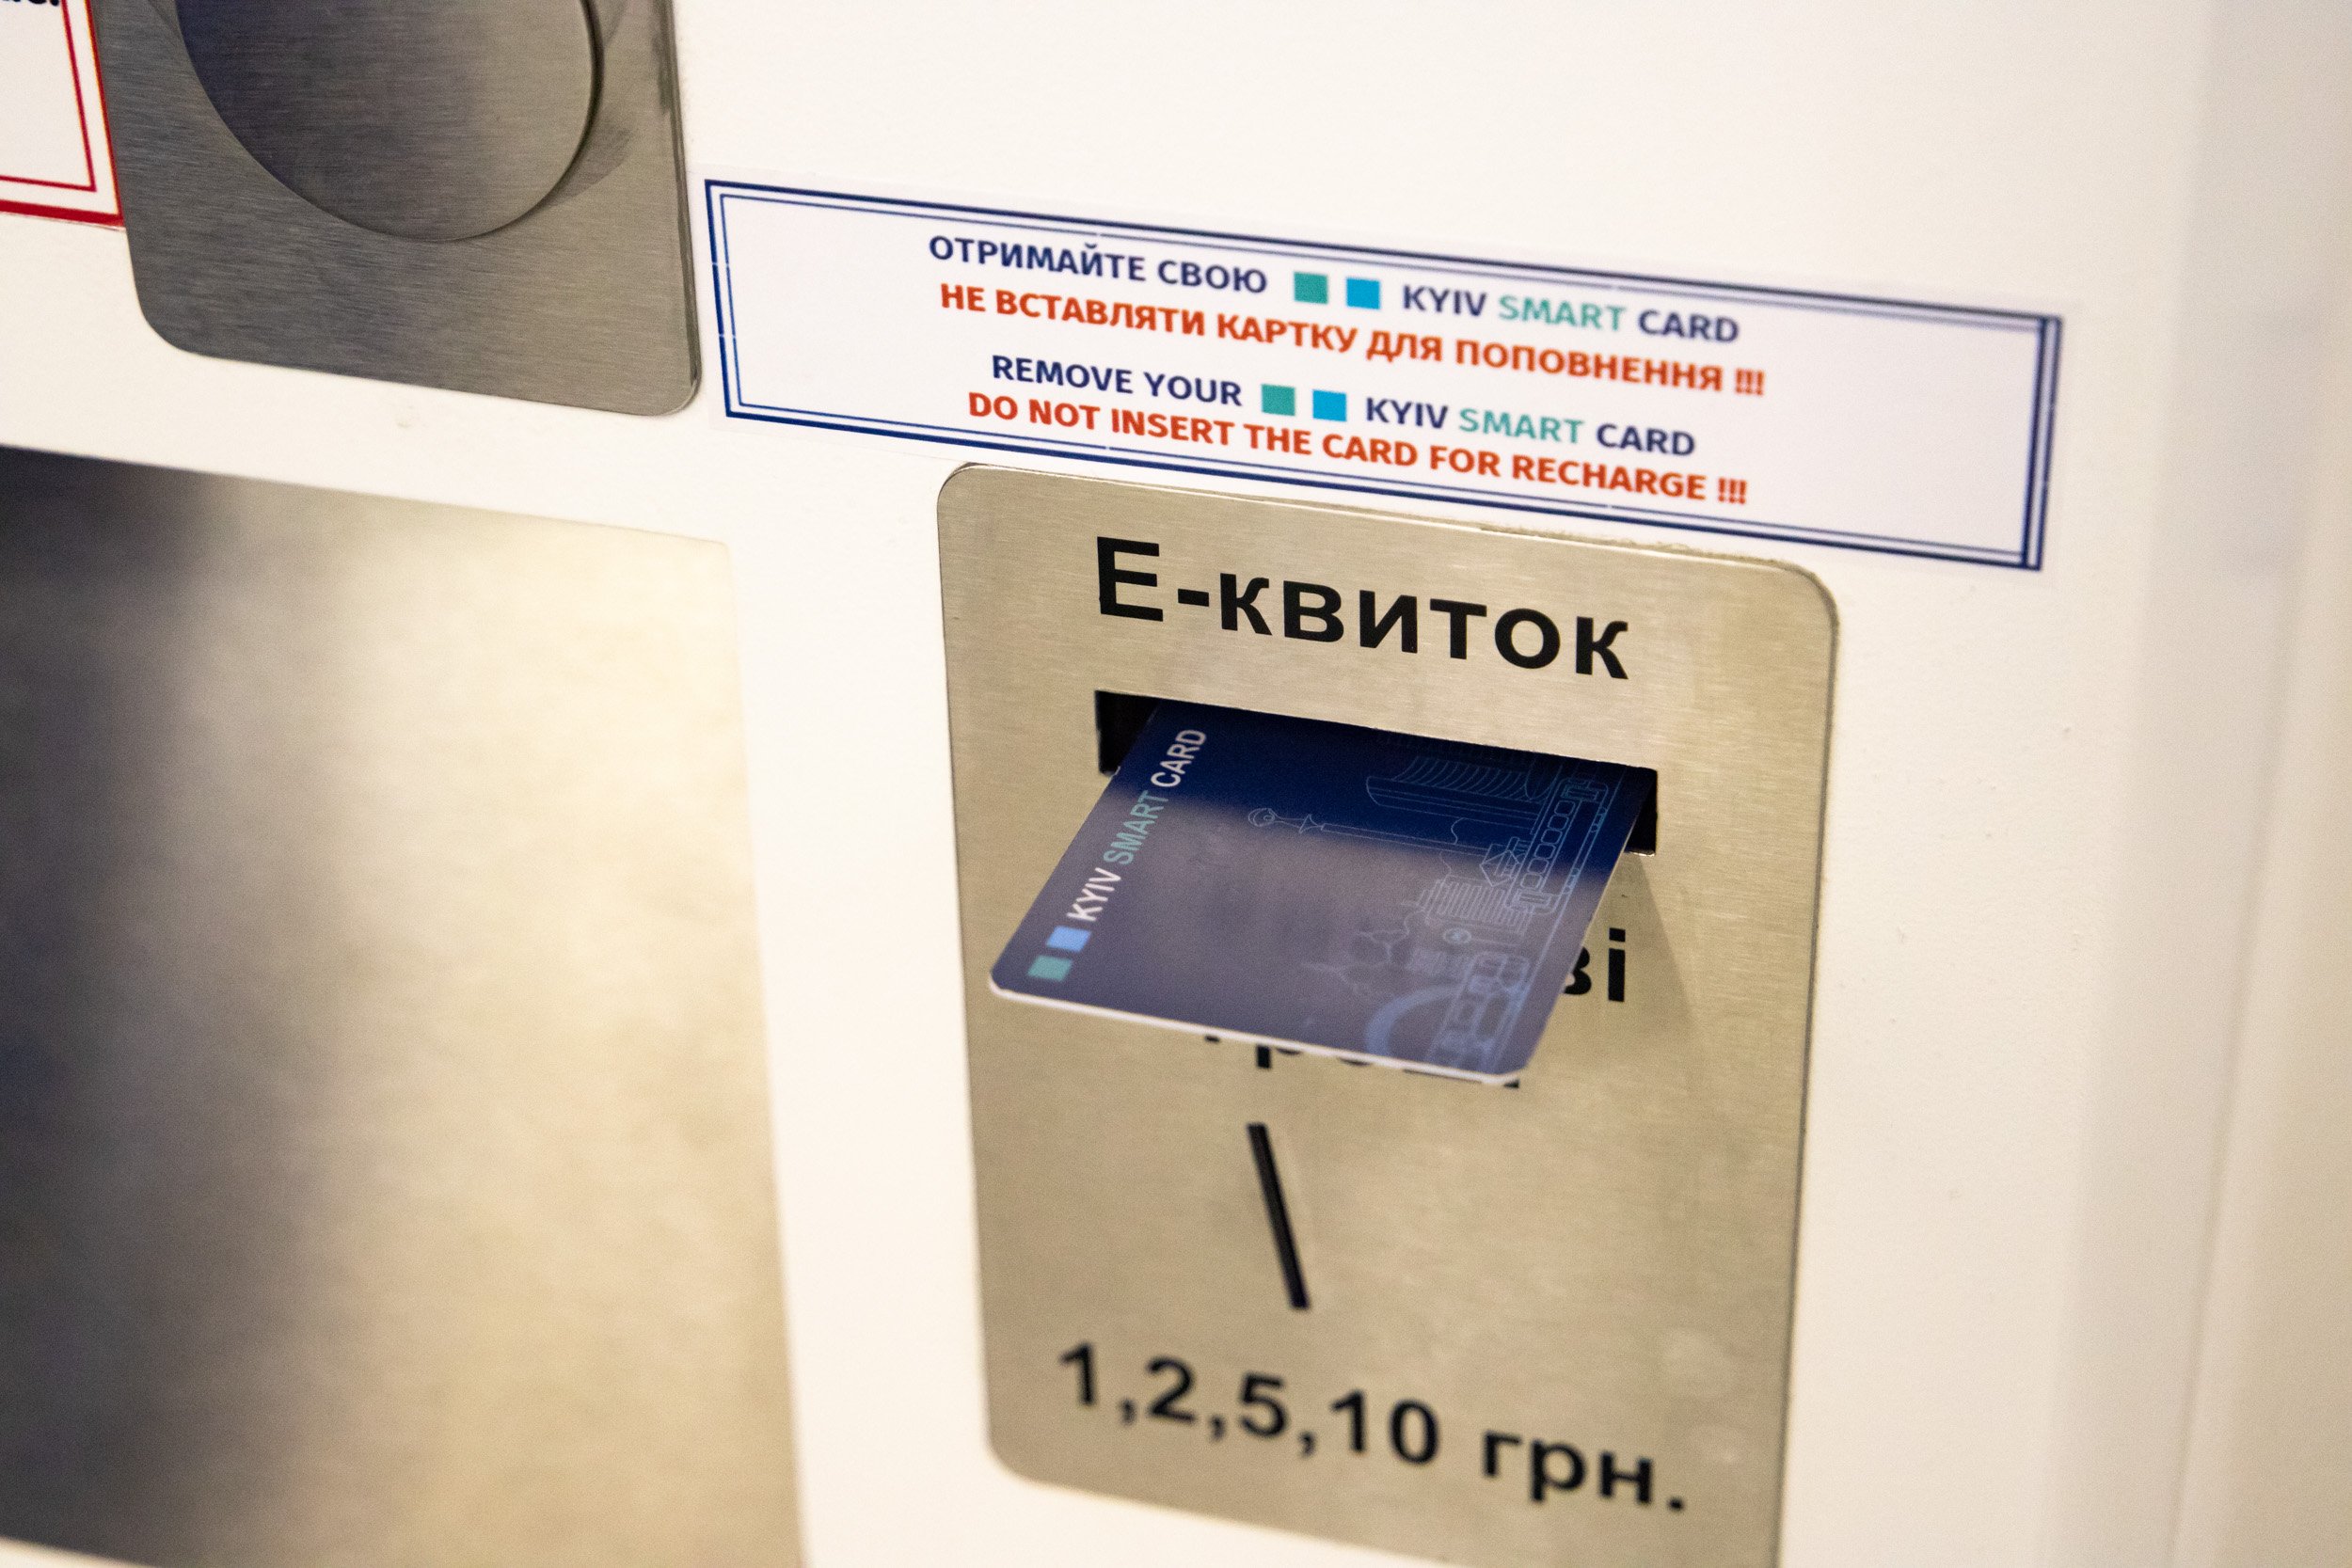 Пополнить Kyiv Smart Card или купить одноразовый QR-билет можно на всех станциях киевского метро - КГГА